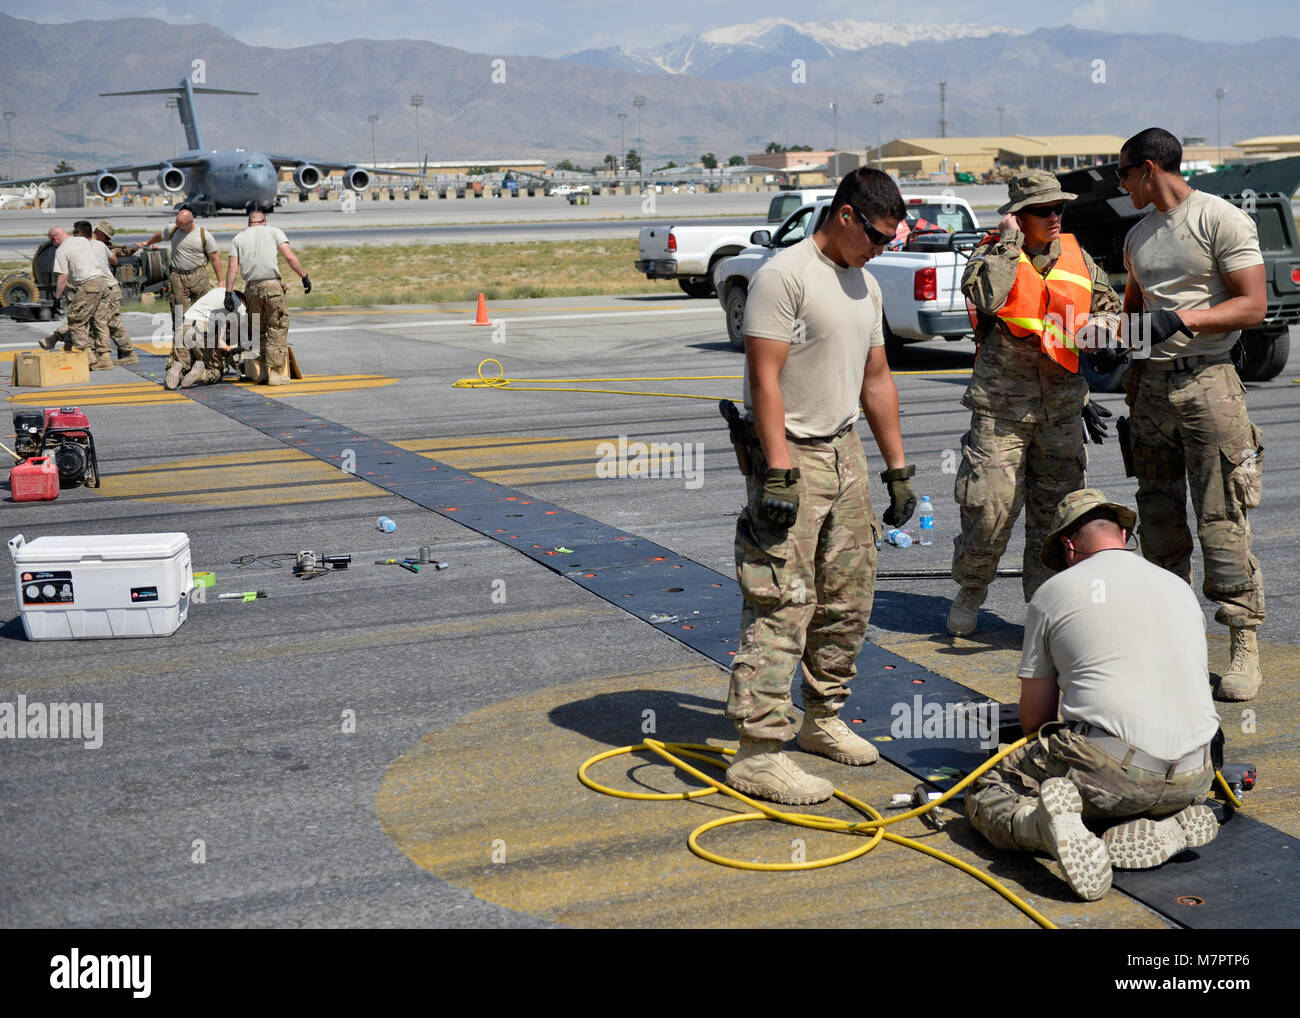 Pilotos de la Fuerza Aérea de los EE.UU con la 455Expedicionaria escuadrón de ingenieros civiles, esmerilar los pernos en un polly flightline pad en el aeródromo de Bagram, Afganistán, 5 de junio, 2014. Pulir los tornillos es necesaria para evitar que los aviones de reventar los neumáticos cuando se ejecuta a través de la almohadilla de Polly. (Ee.Uu. Foto de la fuerza aérea por el Sargento. Evelyn Chávez/liberado) 455a ala expedicionaria aérea aeródromo de Bagram, Afganistán Foto de stock